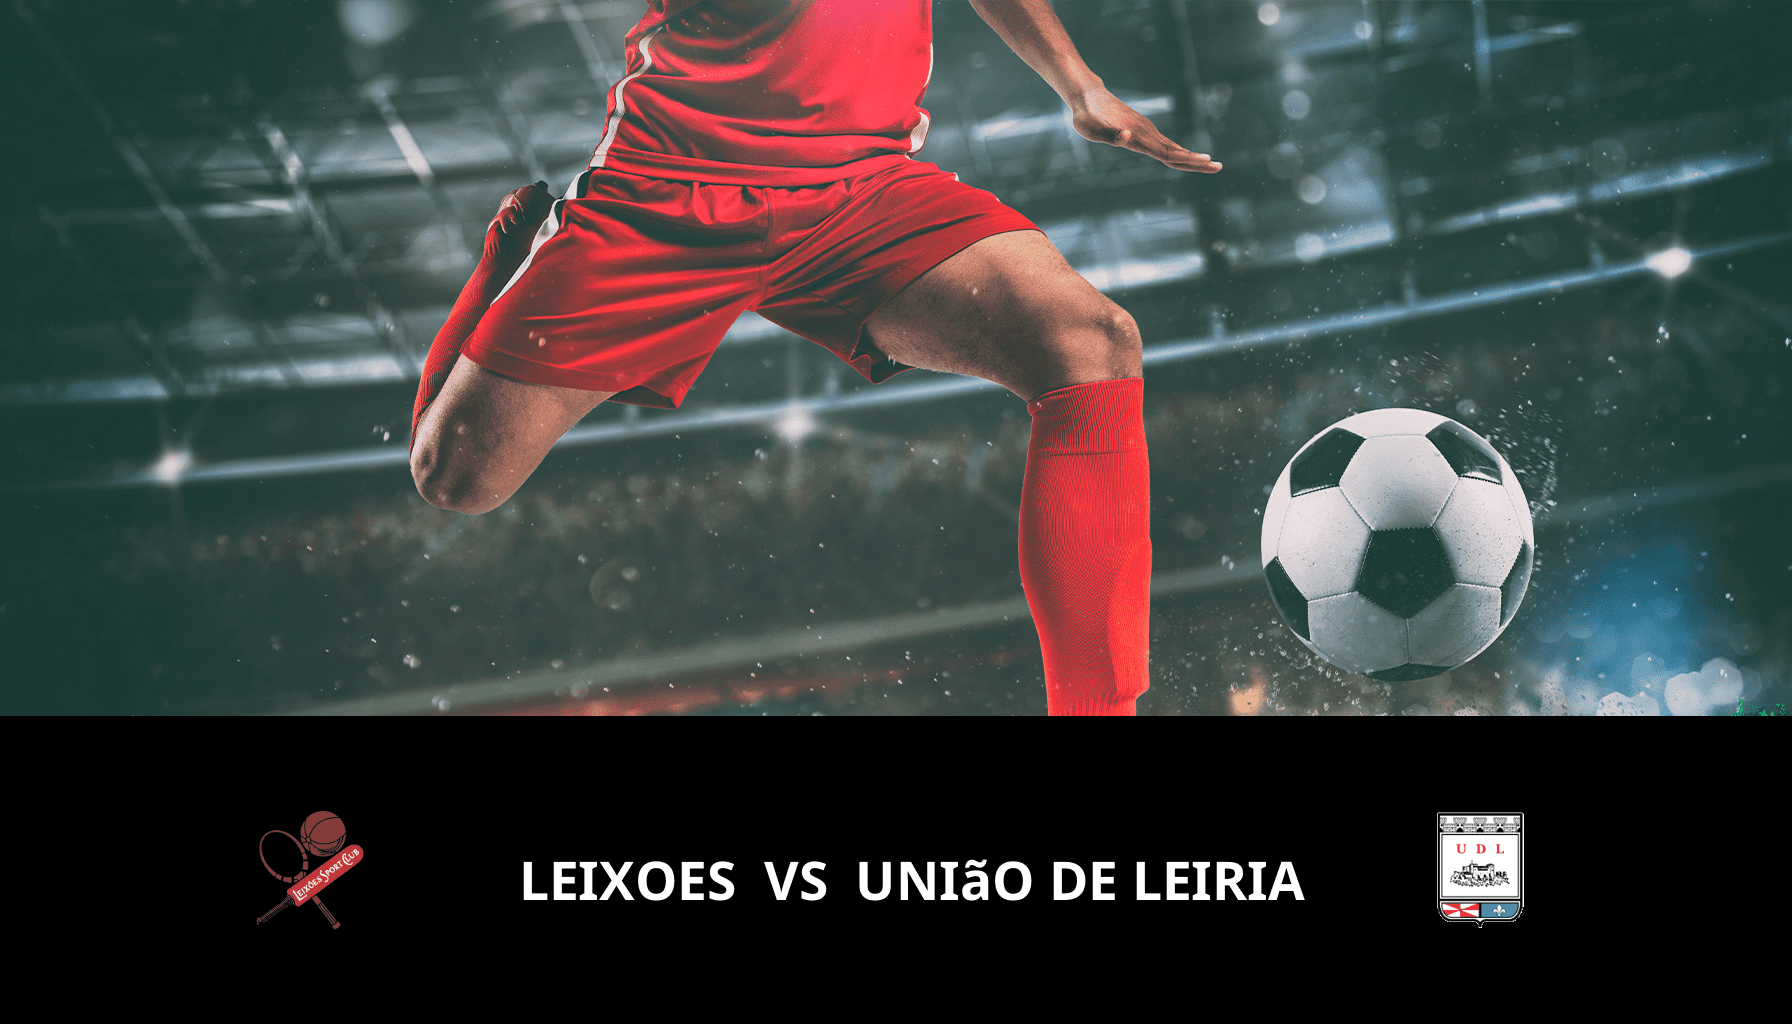 Previsione per Leixoes VS União de Leiria il 06/04/2024 Analysis of the match